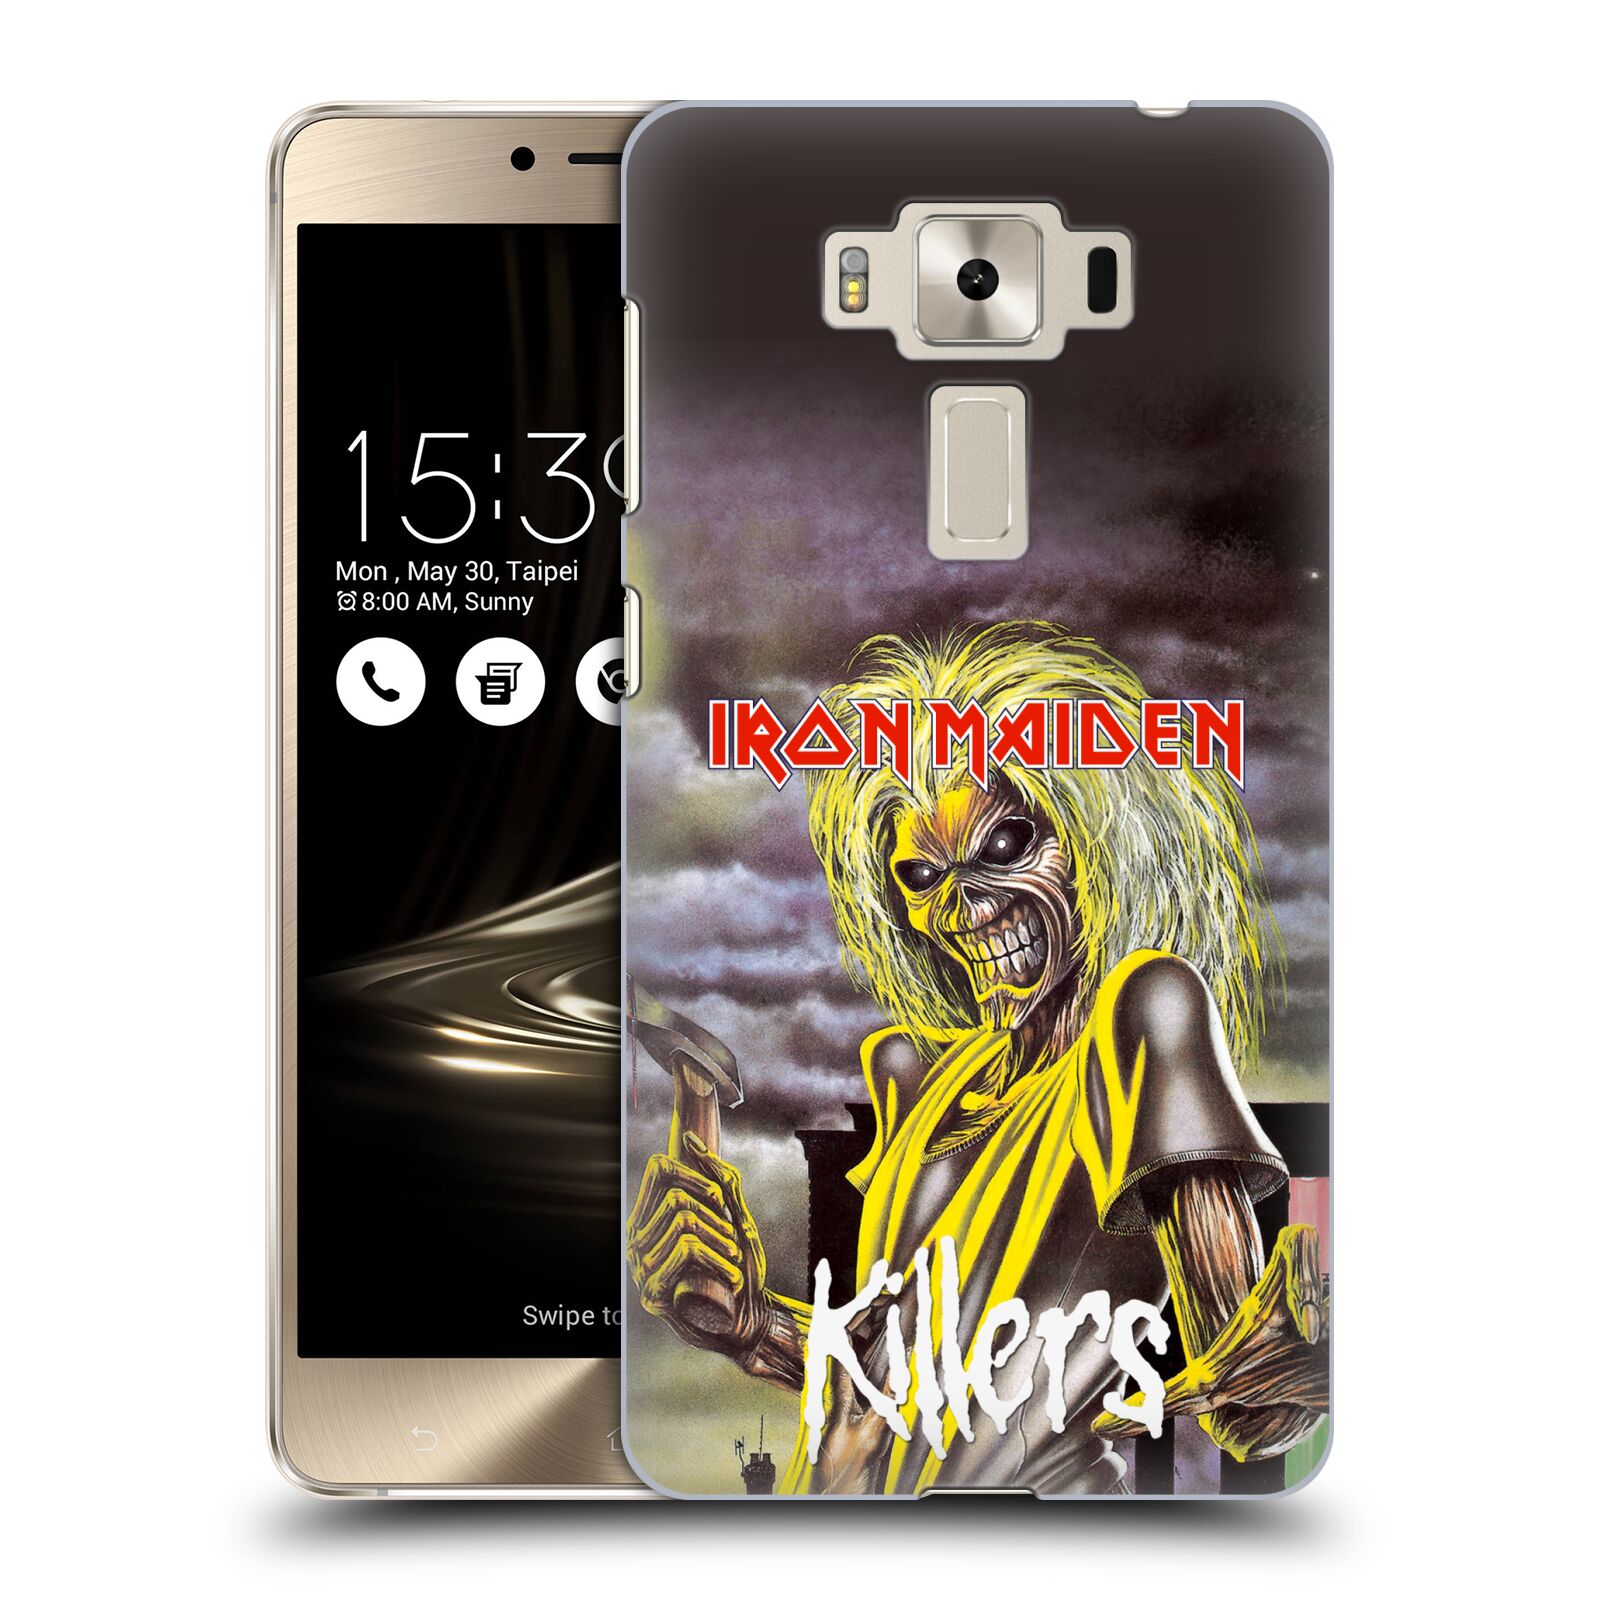 HEAD CASE plastový obal na mobil Asus Zenfone 3 DELUXE ZS550KL Heavymetalová skupina Iron Maiden Killers